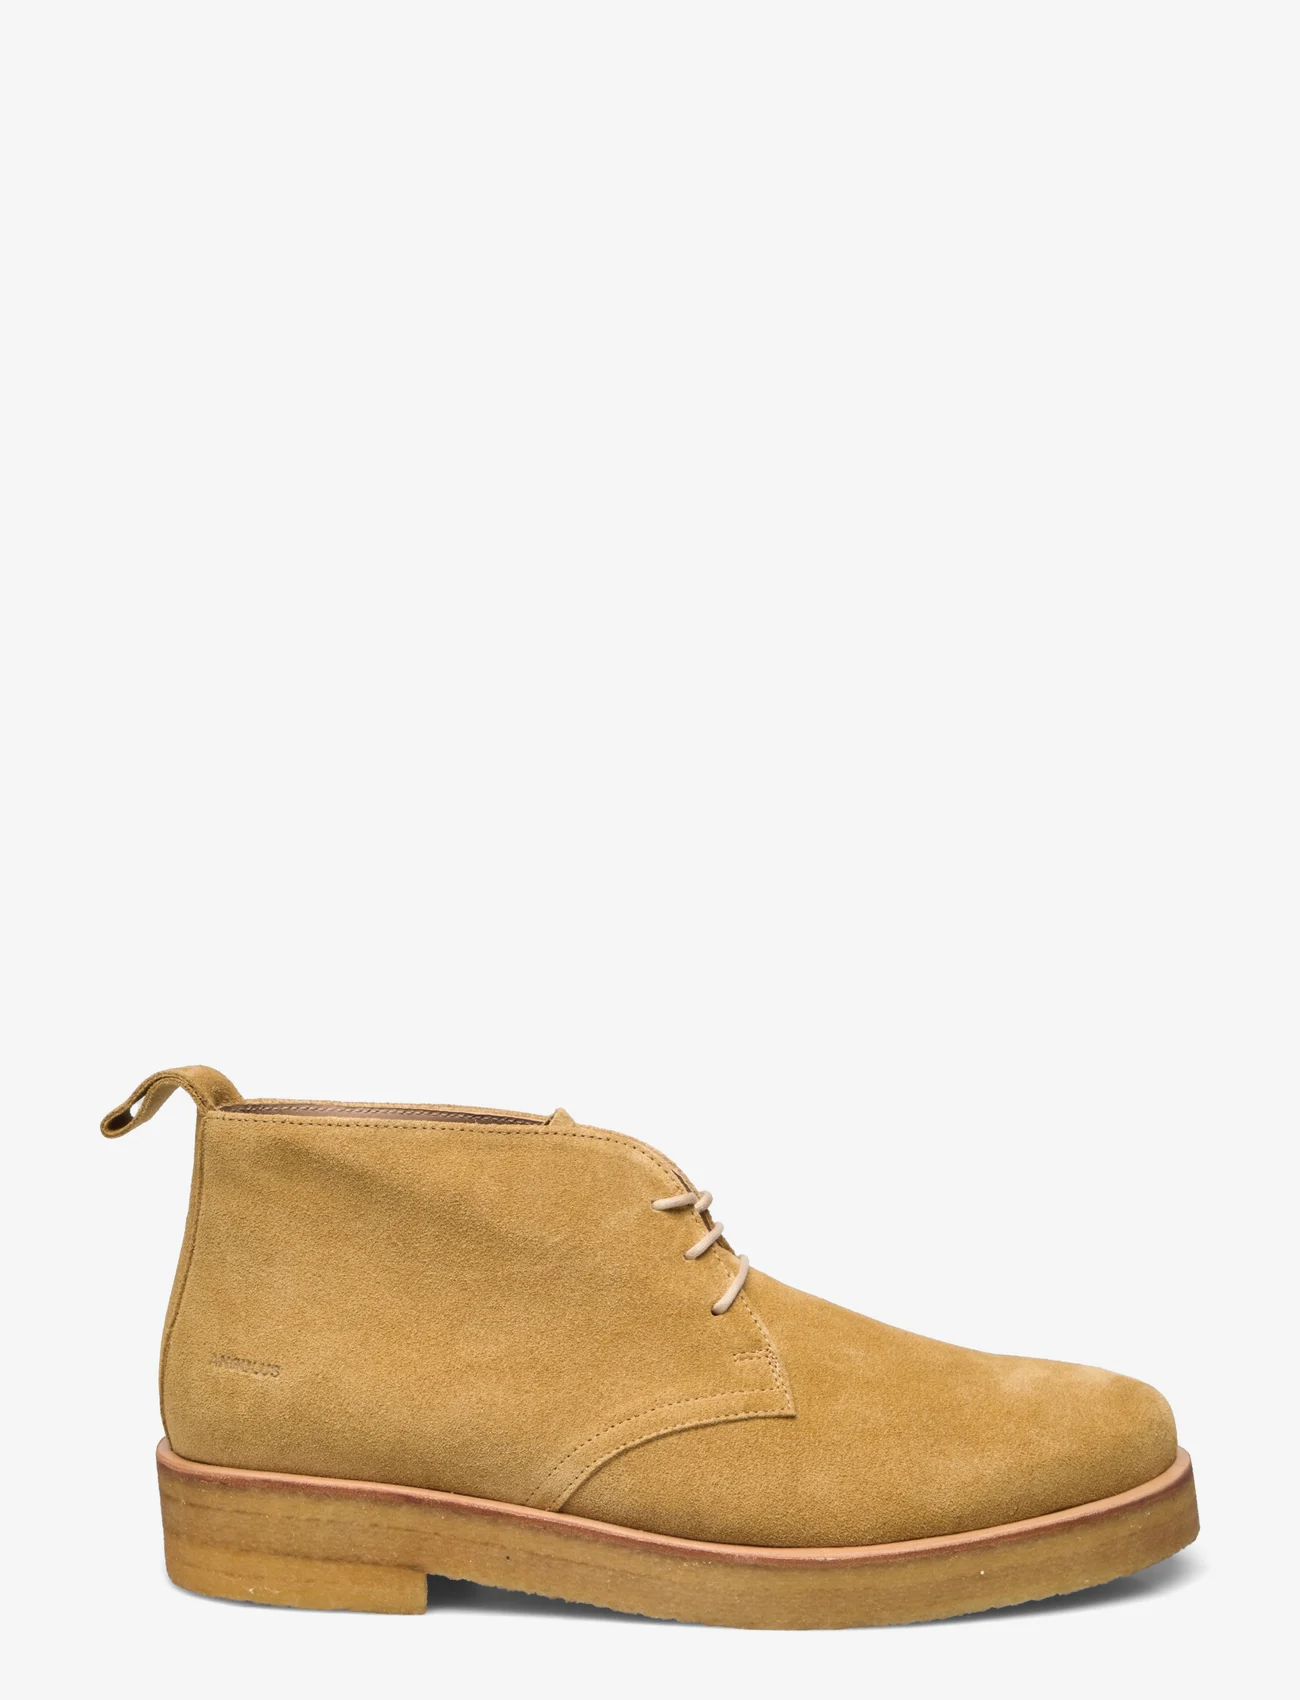 ANGULUS - Shoes - flat - desert boots - 2239 light mustard - 1